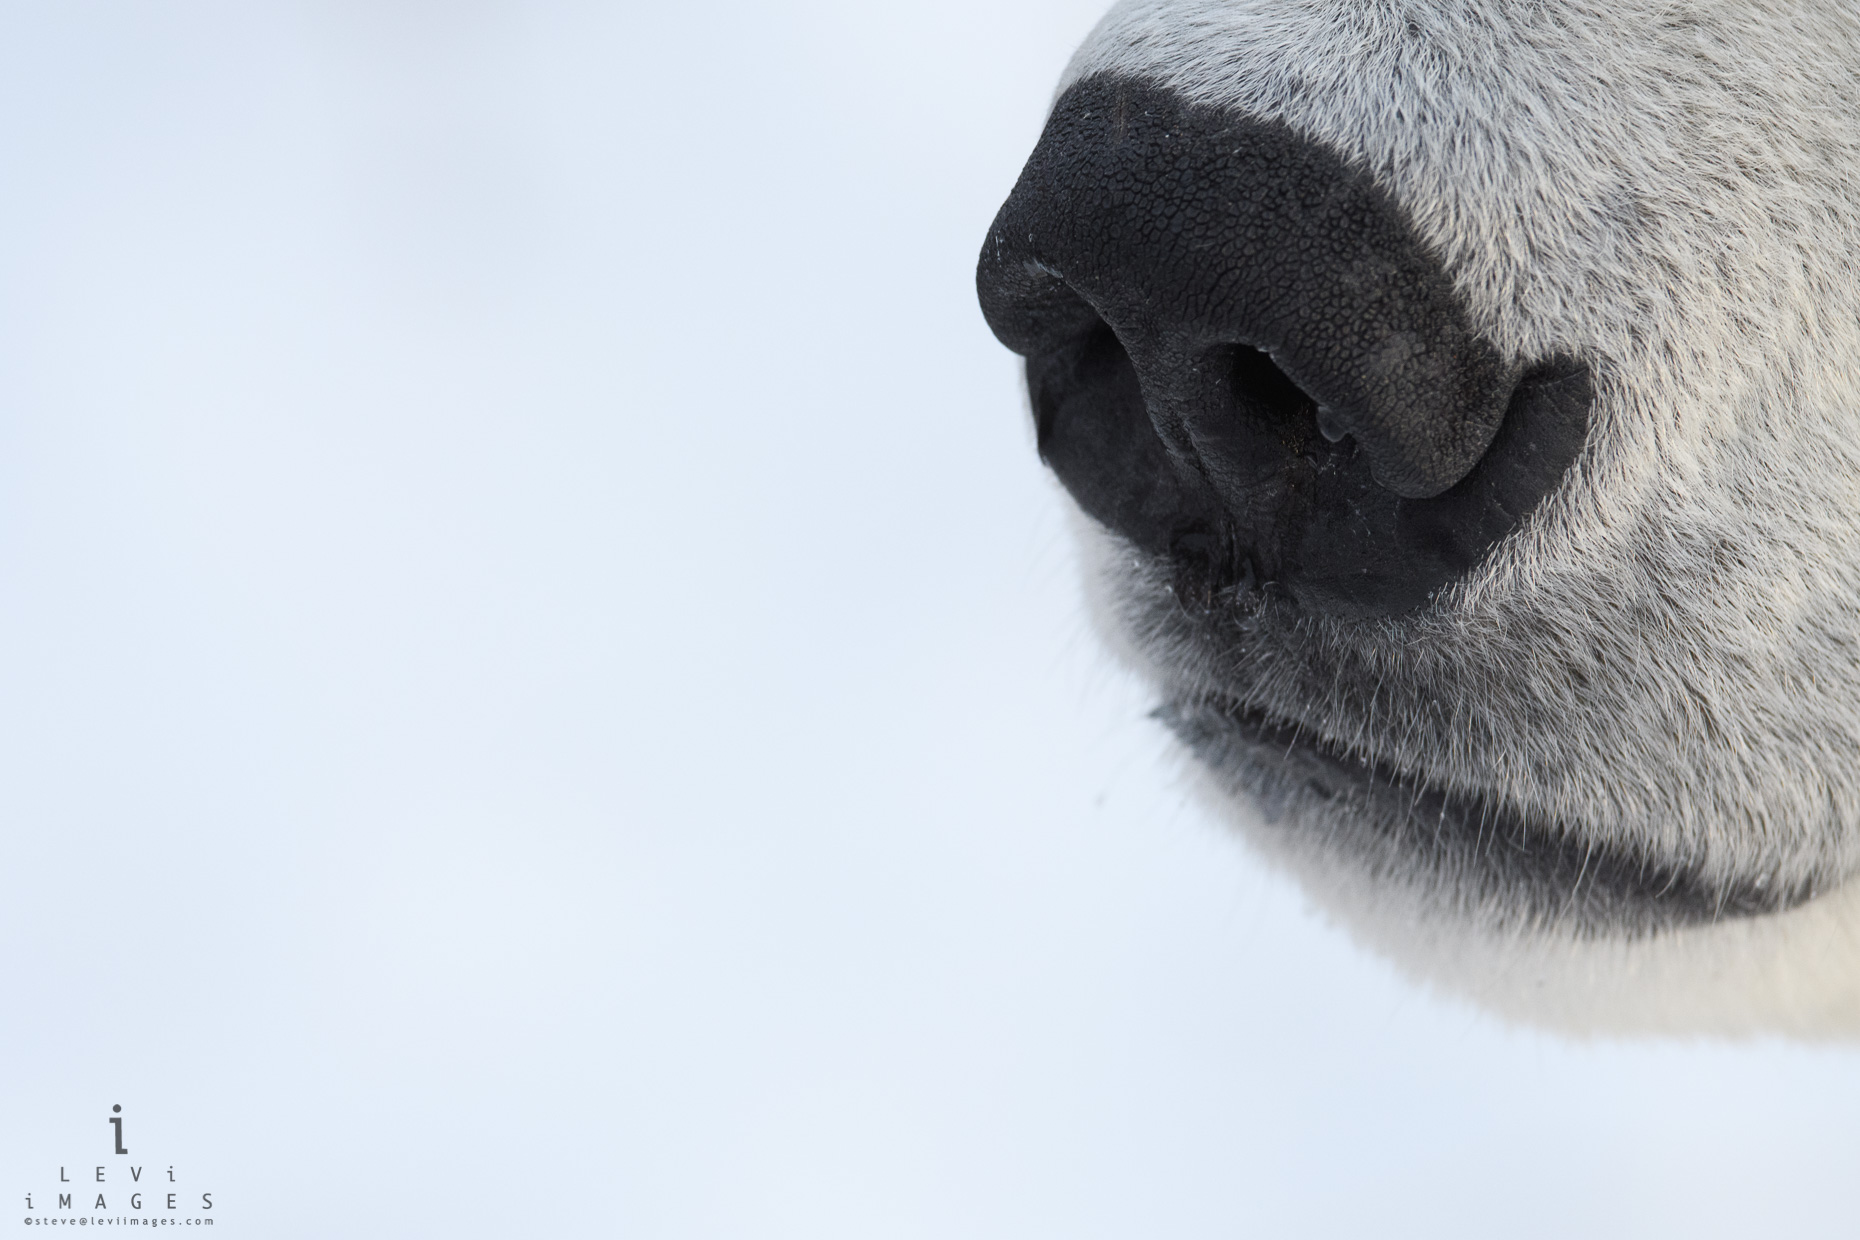 Polar bear (Ursus maritimus) nose close-up. Manitoba, Canada